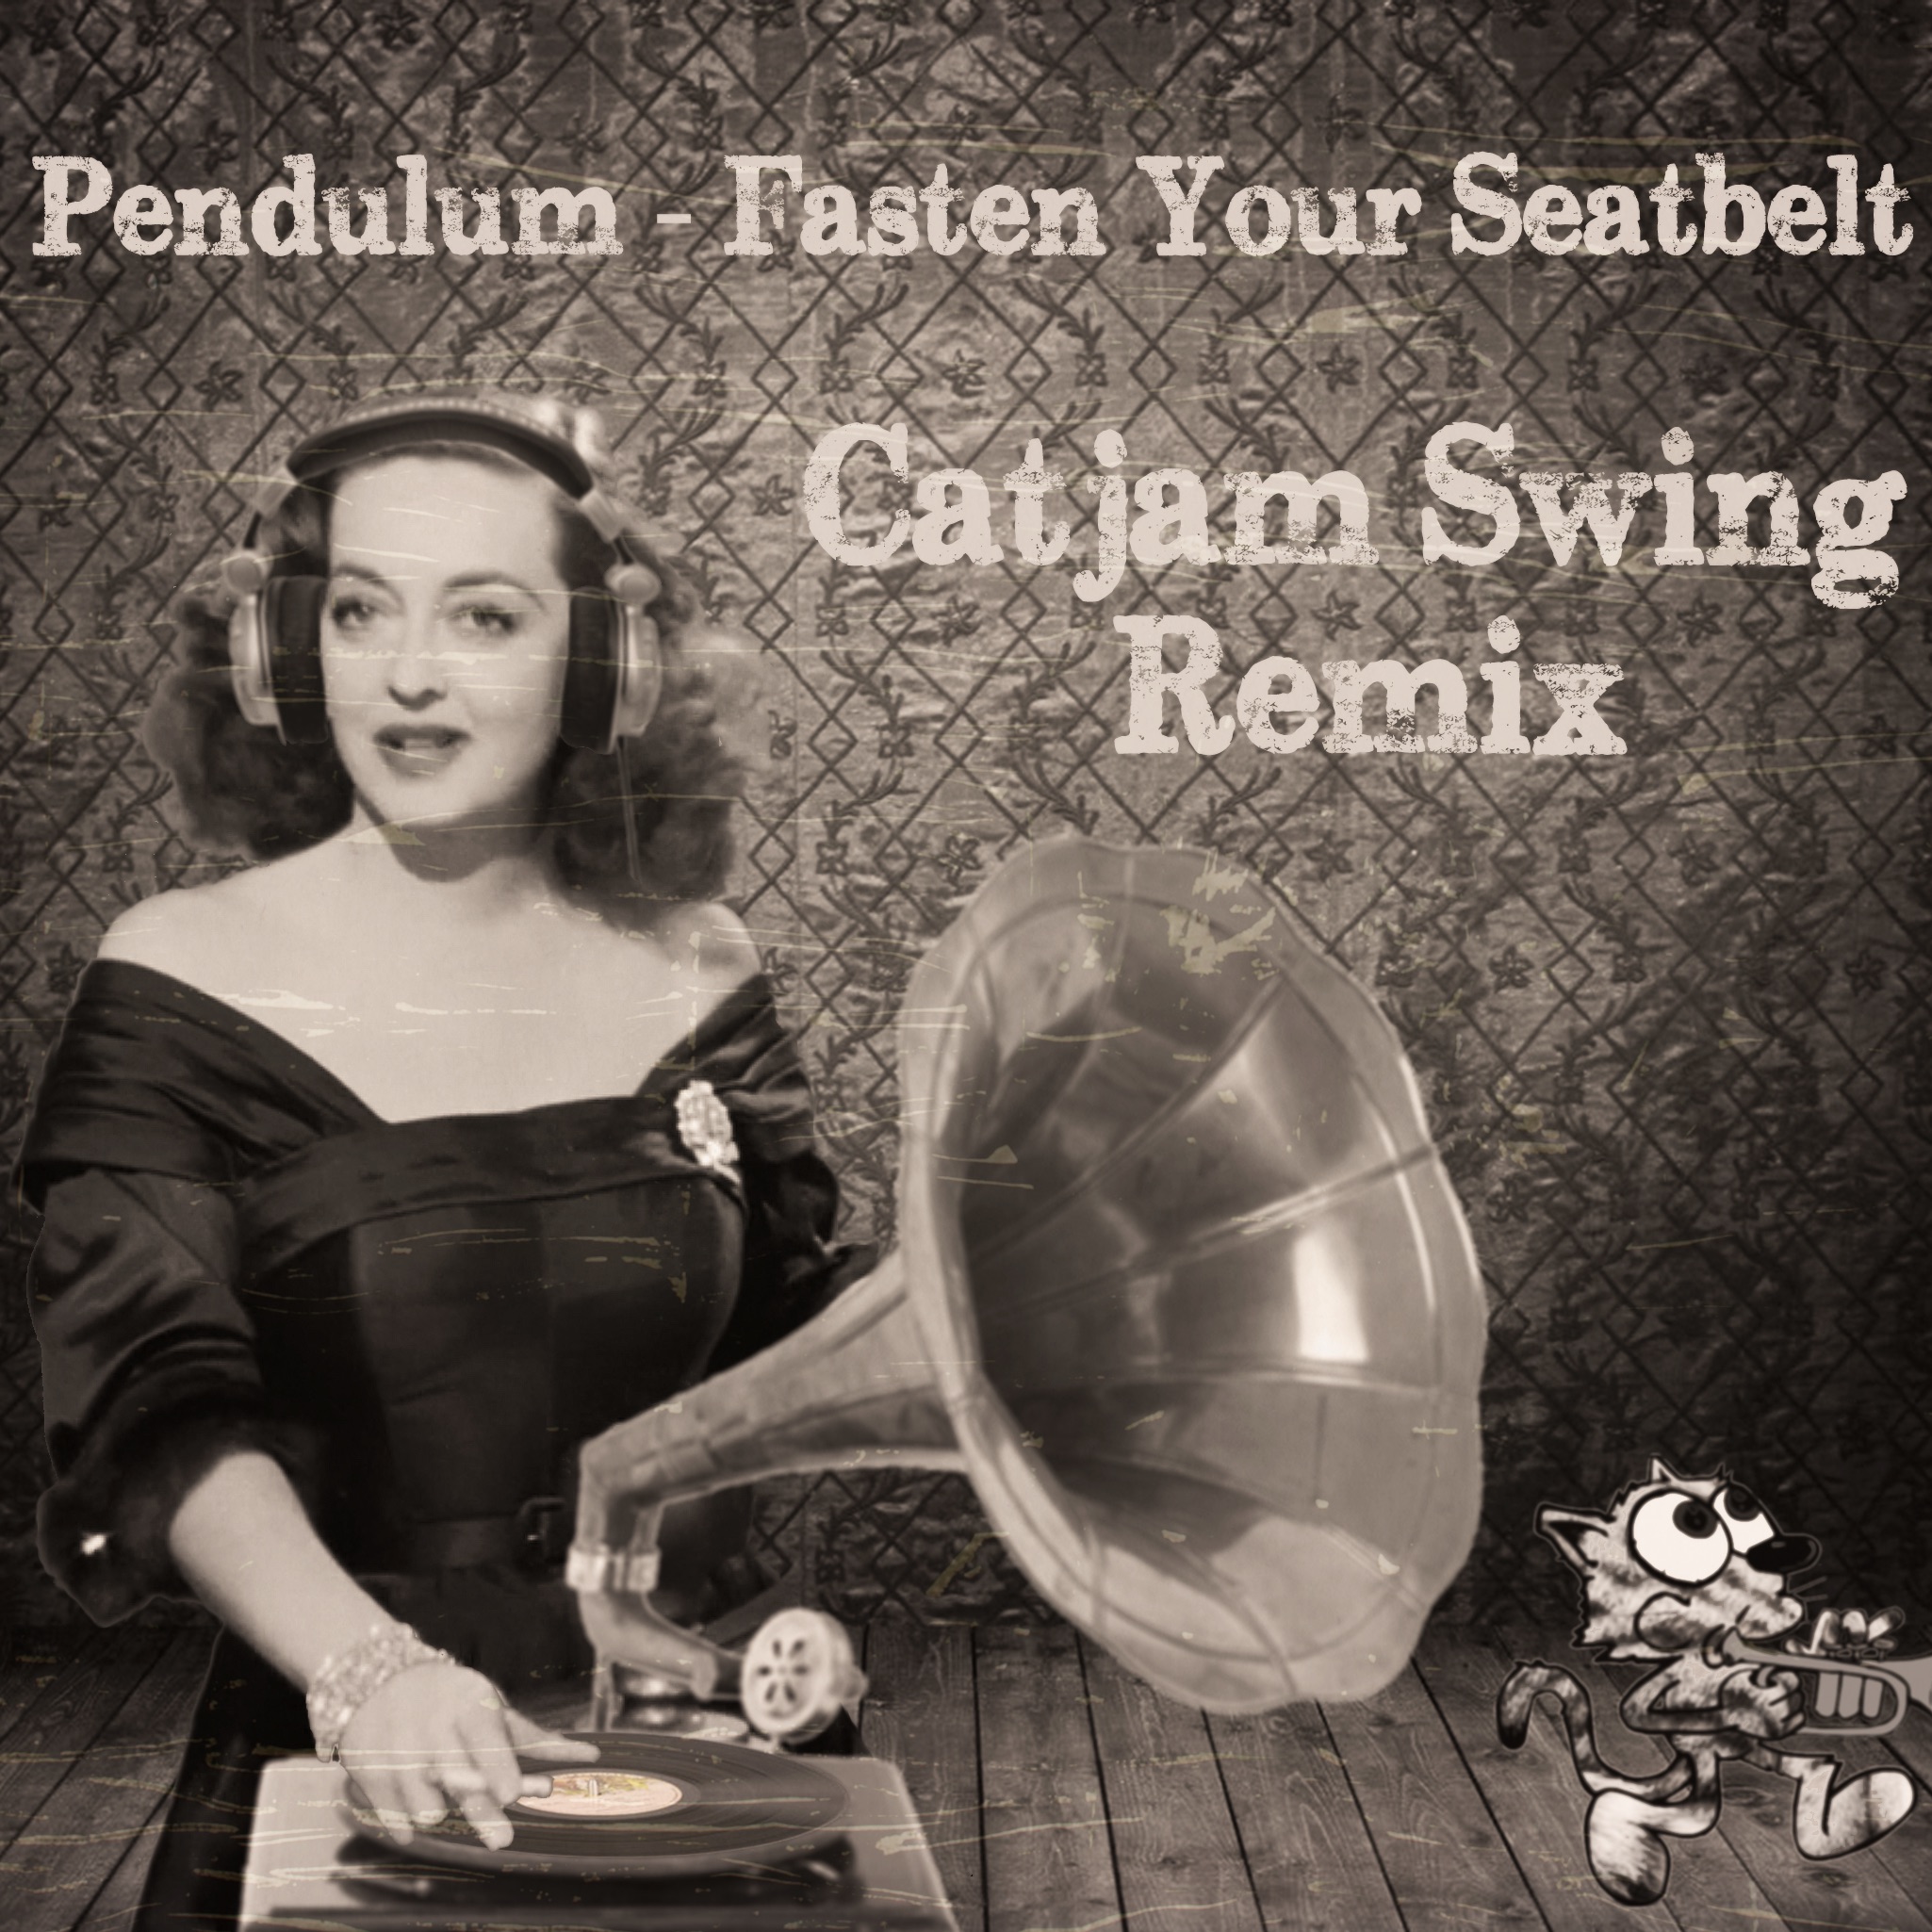 ဒေါင်းလုပ် Fasten Your Seatbelt (Catjam Swing Bootleg) FREE DOWNLOAD!!